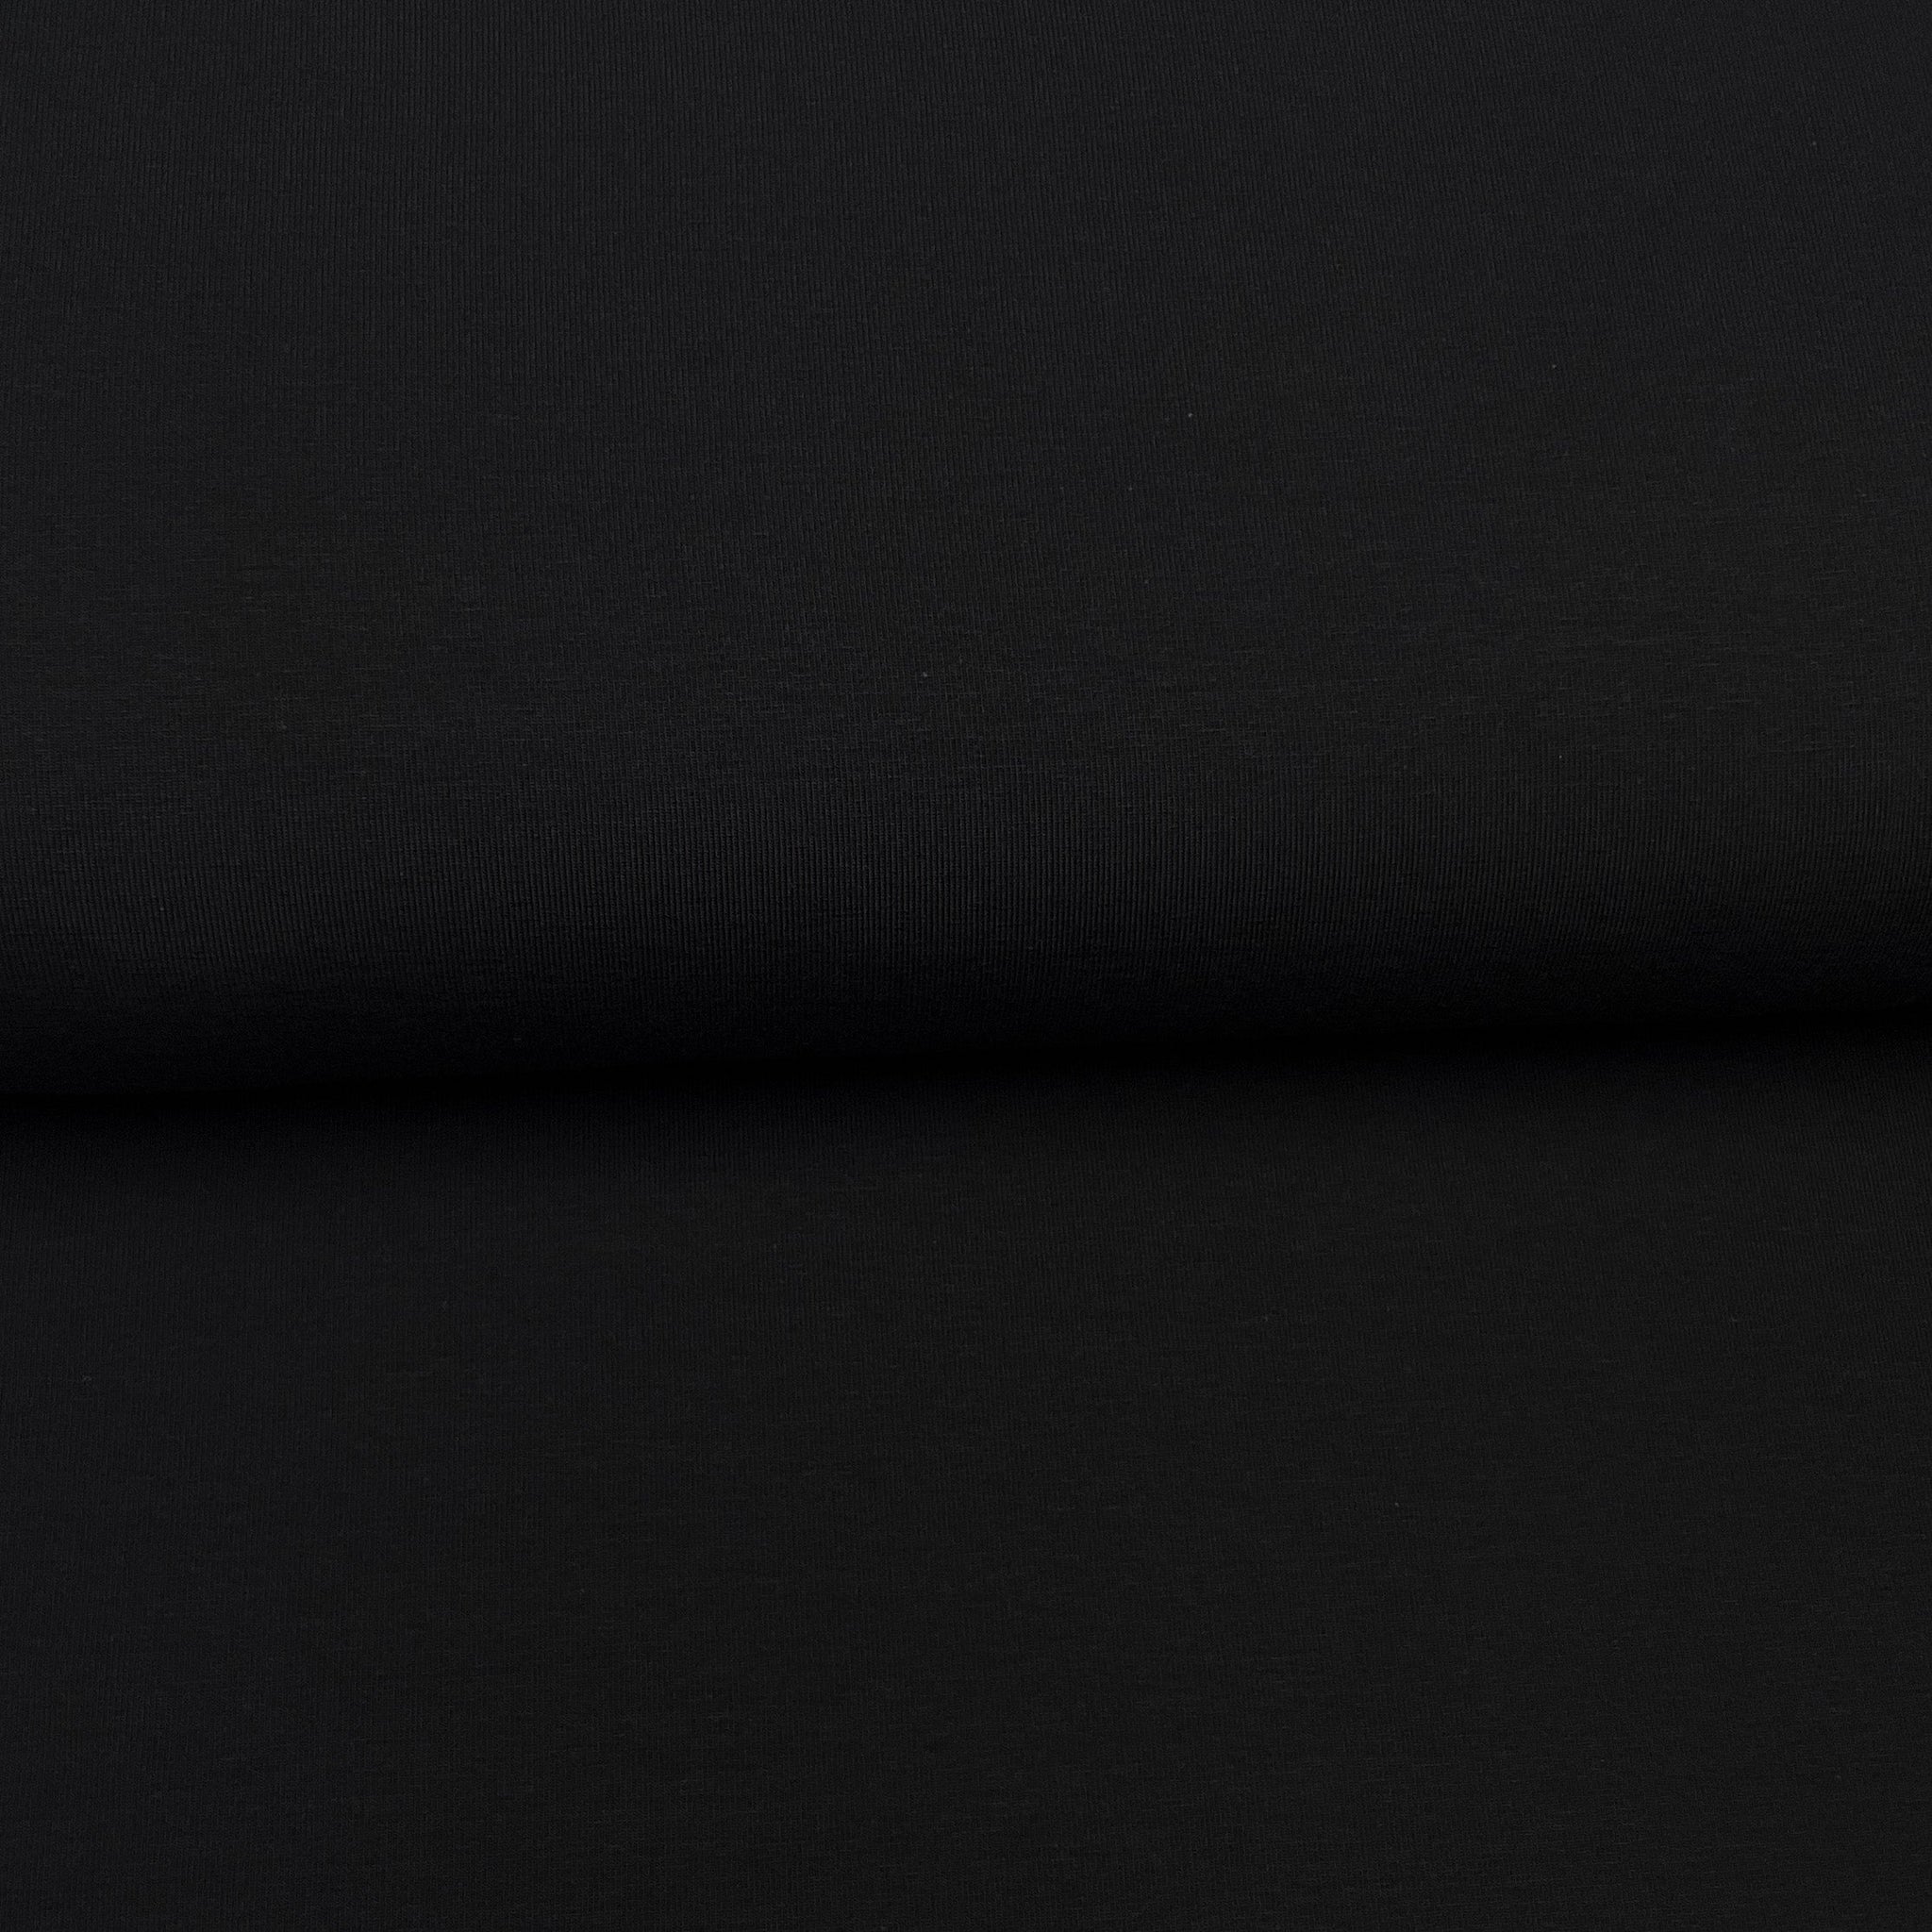 Fin de rouleau 22 cm - Noir - Jersey uni